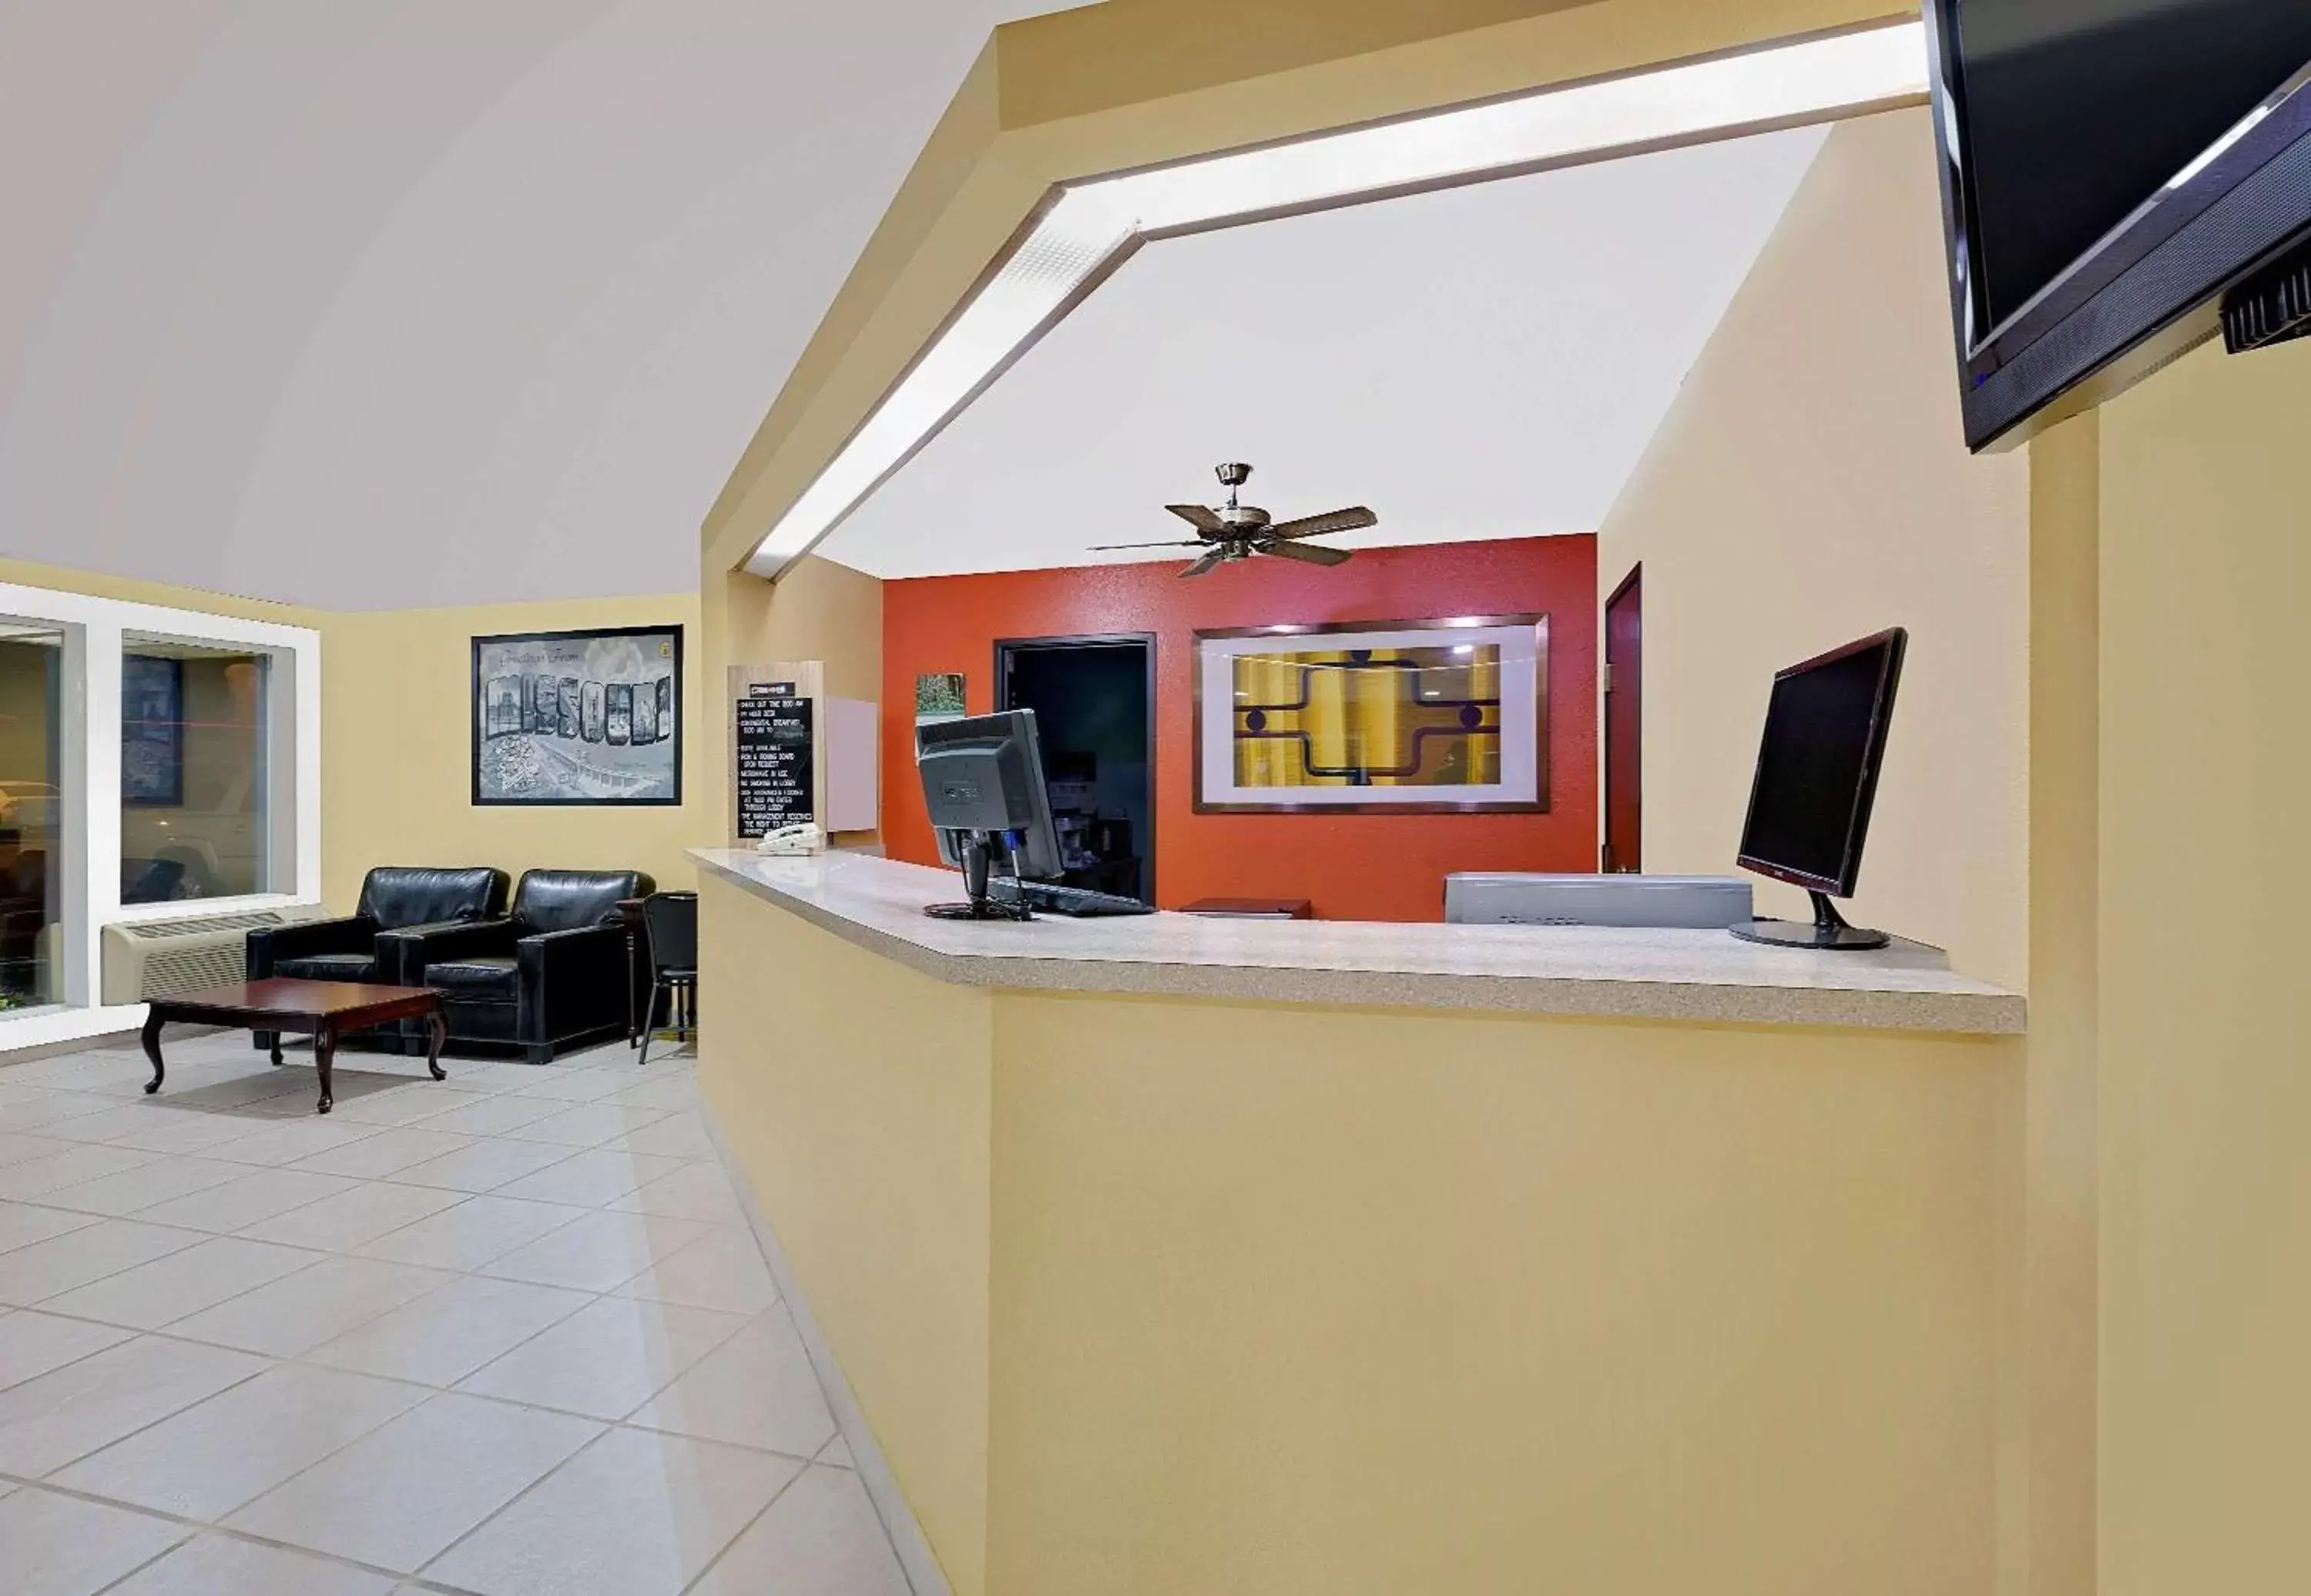 Lobby or reception, Lobby/Reception in Super 8 by Wyndham Rock Port MO